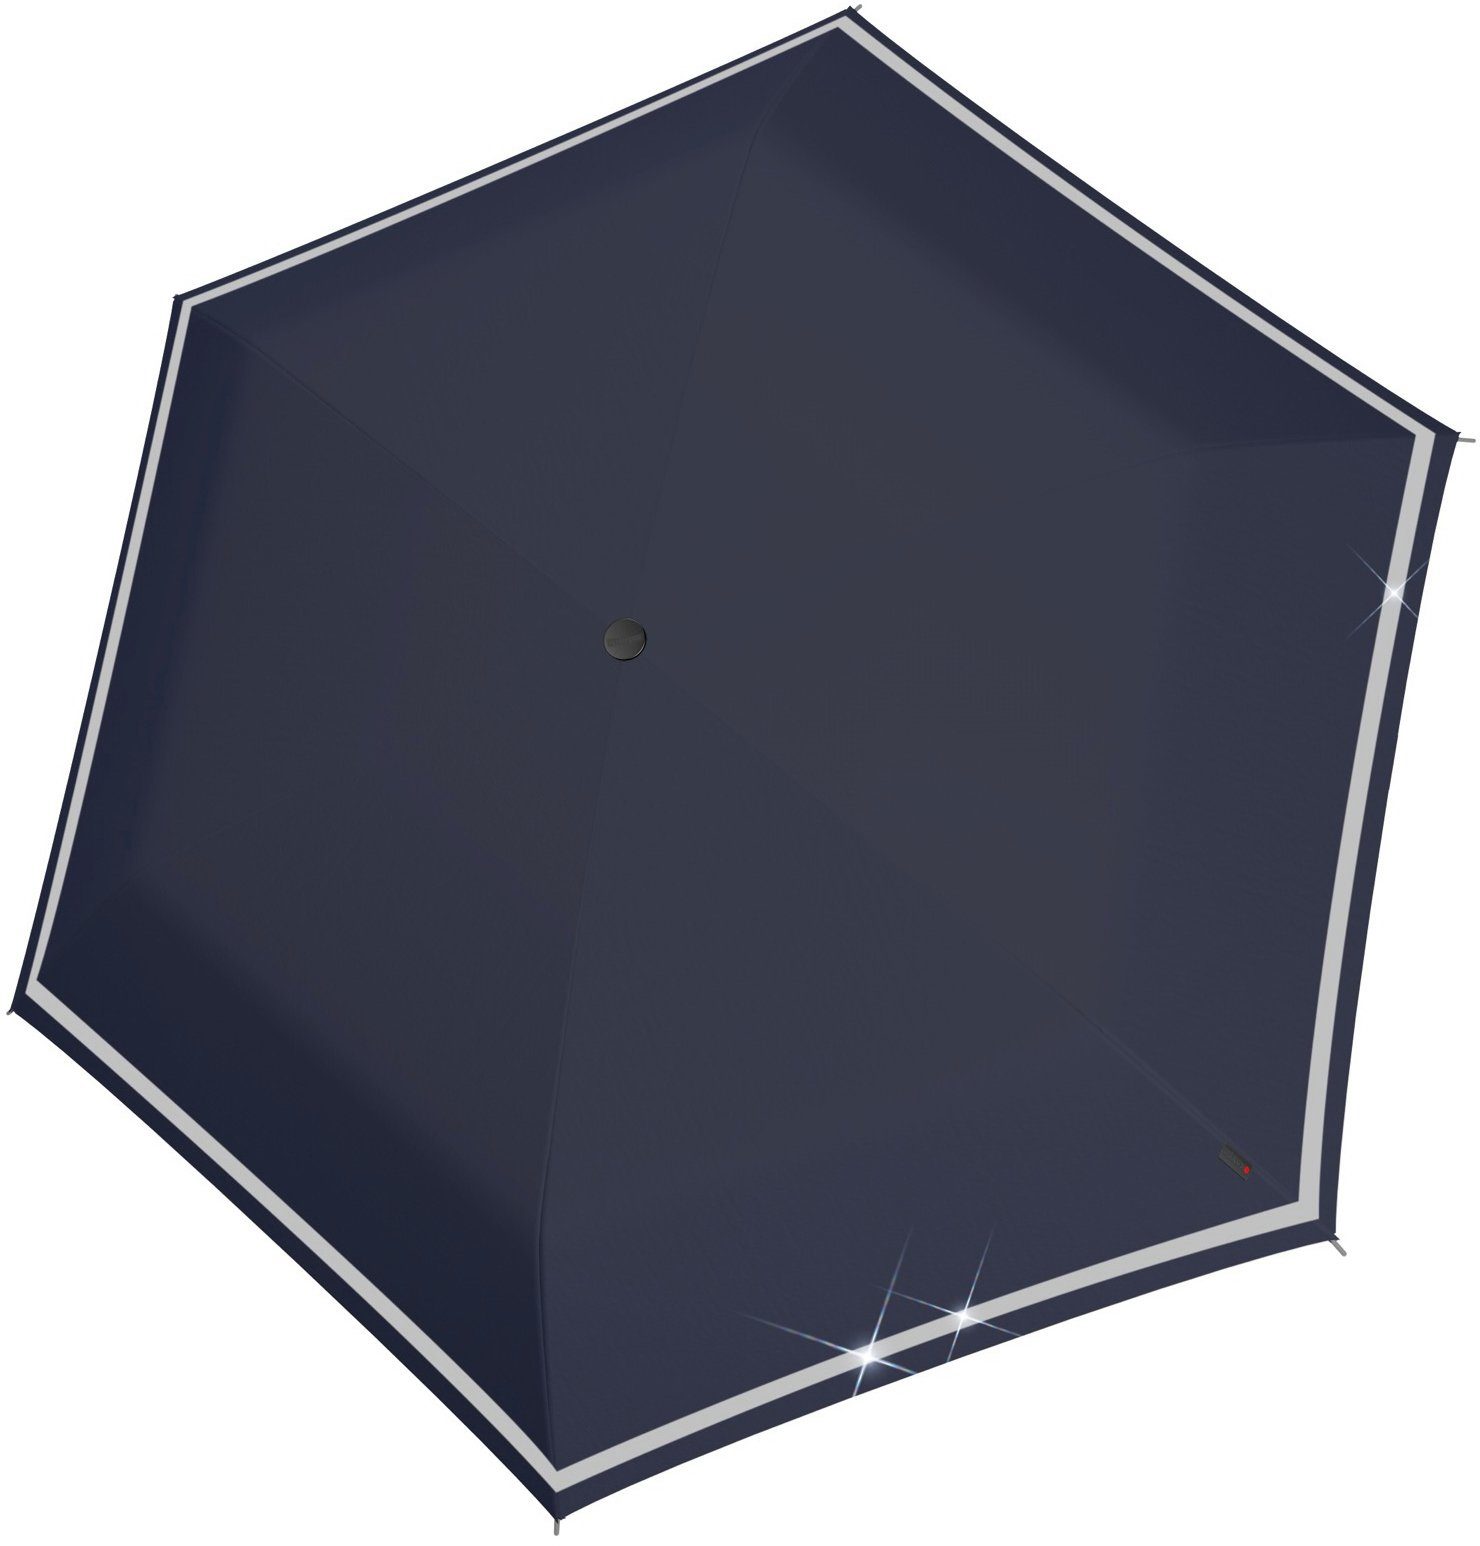 Knirps® Taschenregenschirm Rookie manual, navy reflective, für Kinder; mit umlaufendem, reflektierendem Band | Taschenschirme